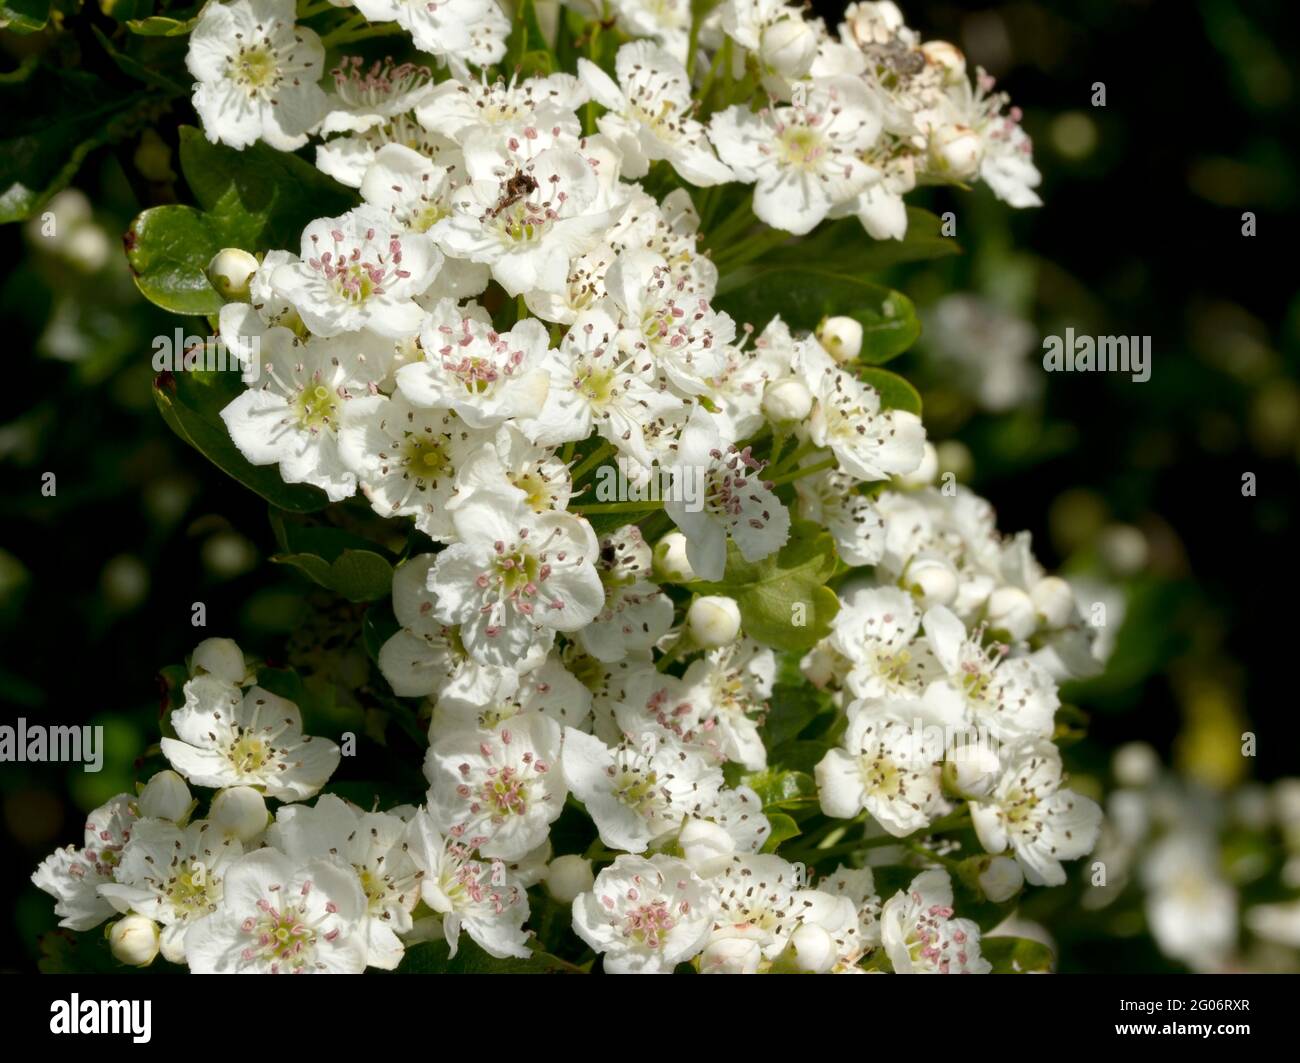 Il biancospino fiorisce in tarda primavera, dandogli il nome comune di  Mayflower. Gli alberi che crescono al sole aperto hanno profuse fioritura  Foto stock - Alamy